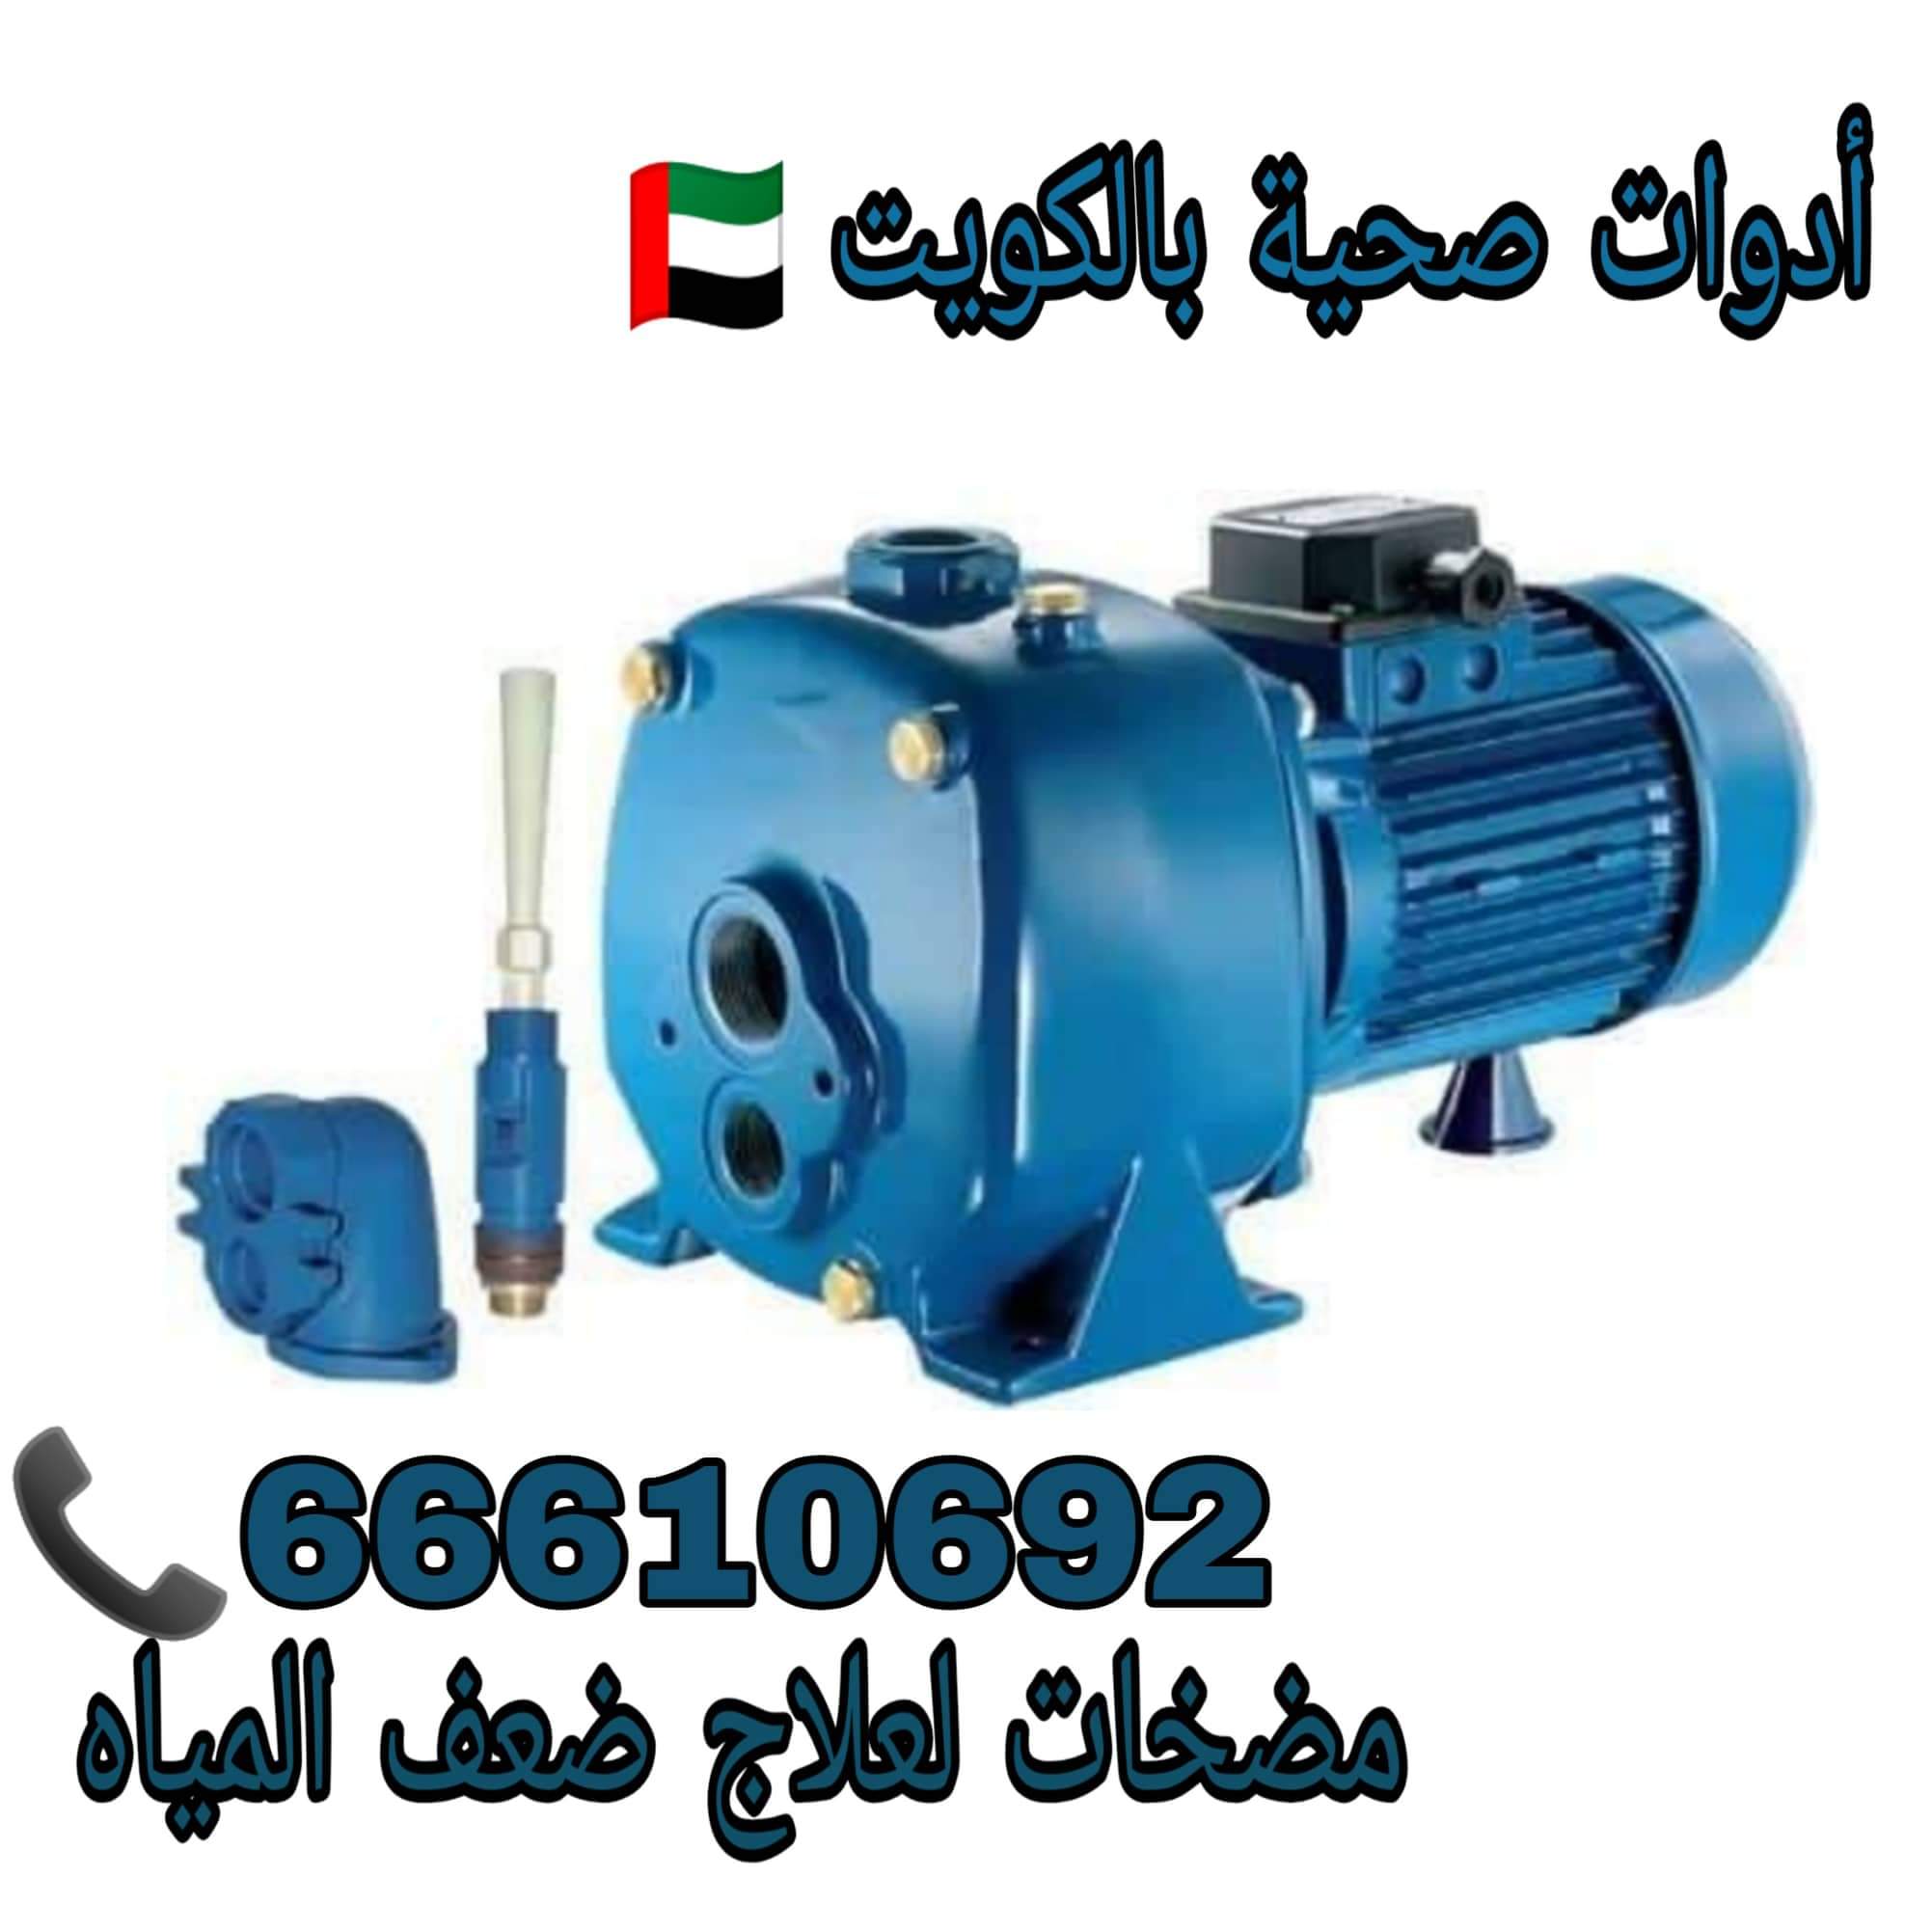 ادوات صحية بيان / 66610692 / صيانة وتركيب فني صحي داخل الكويت